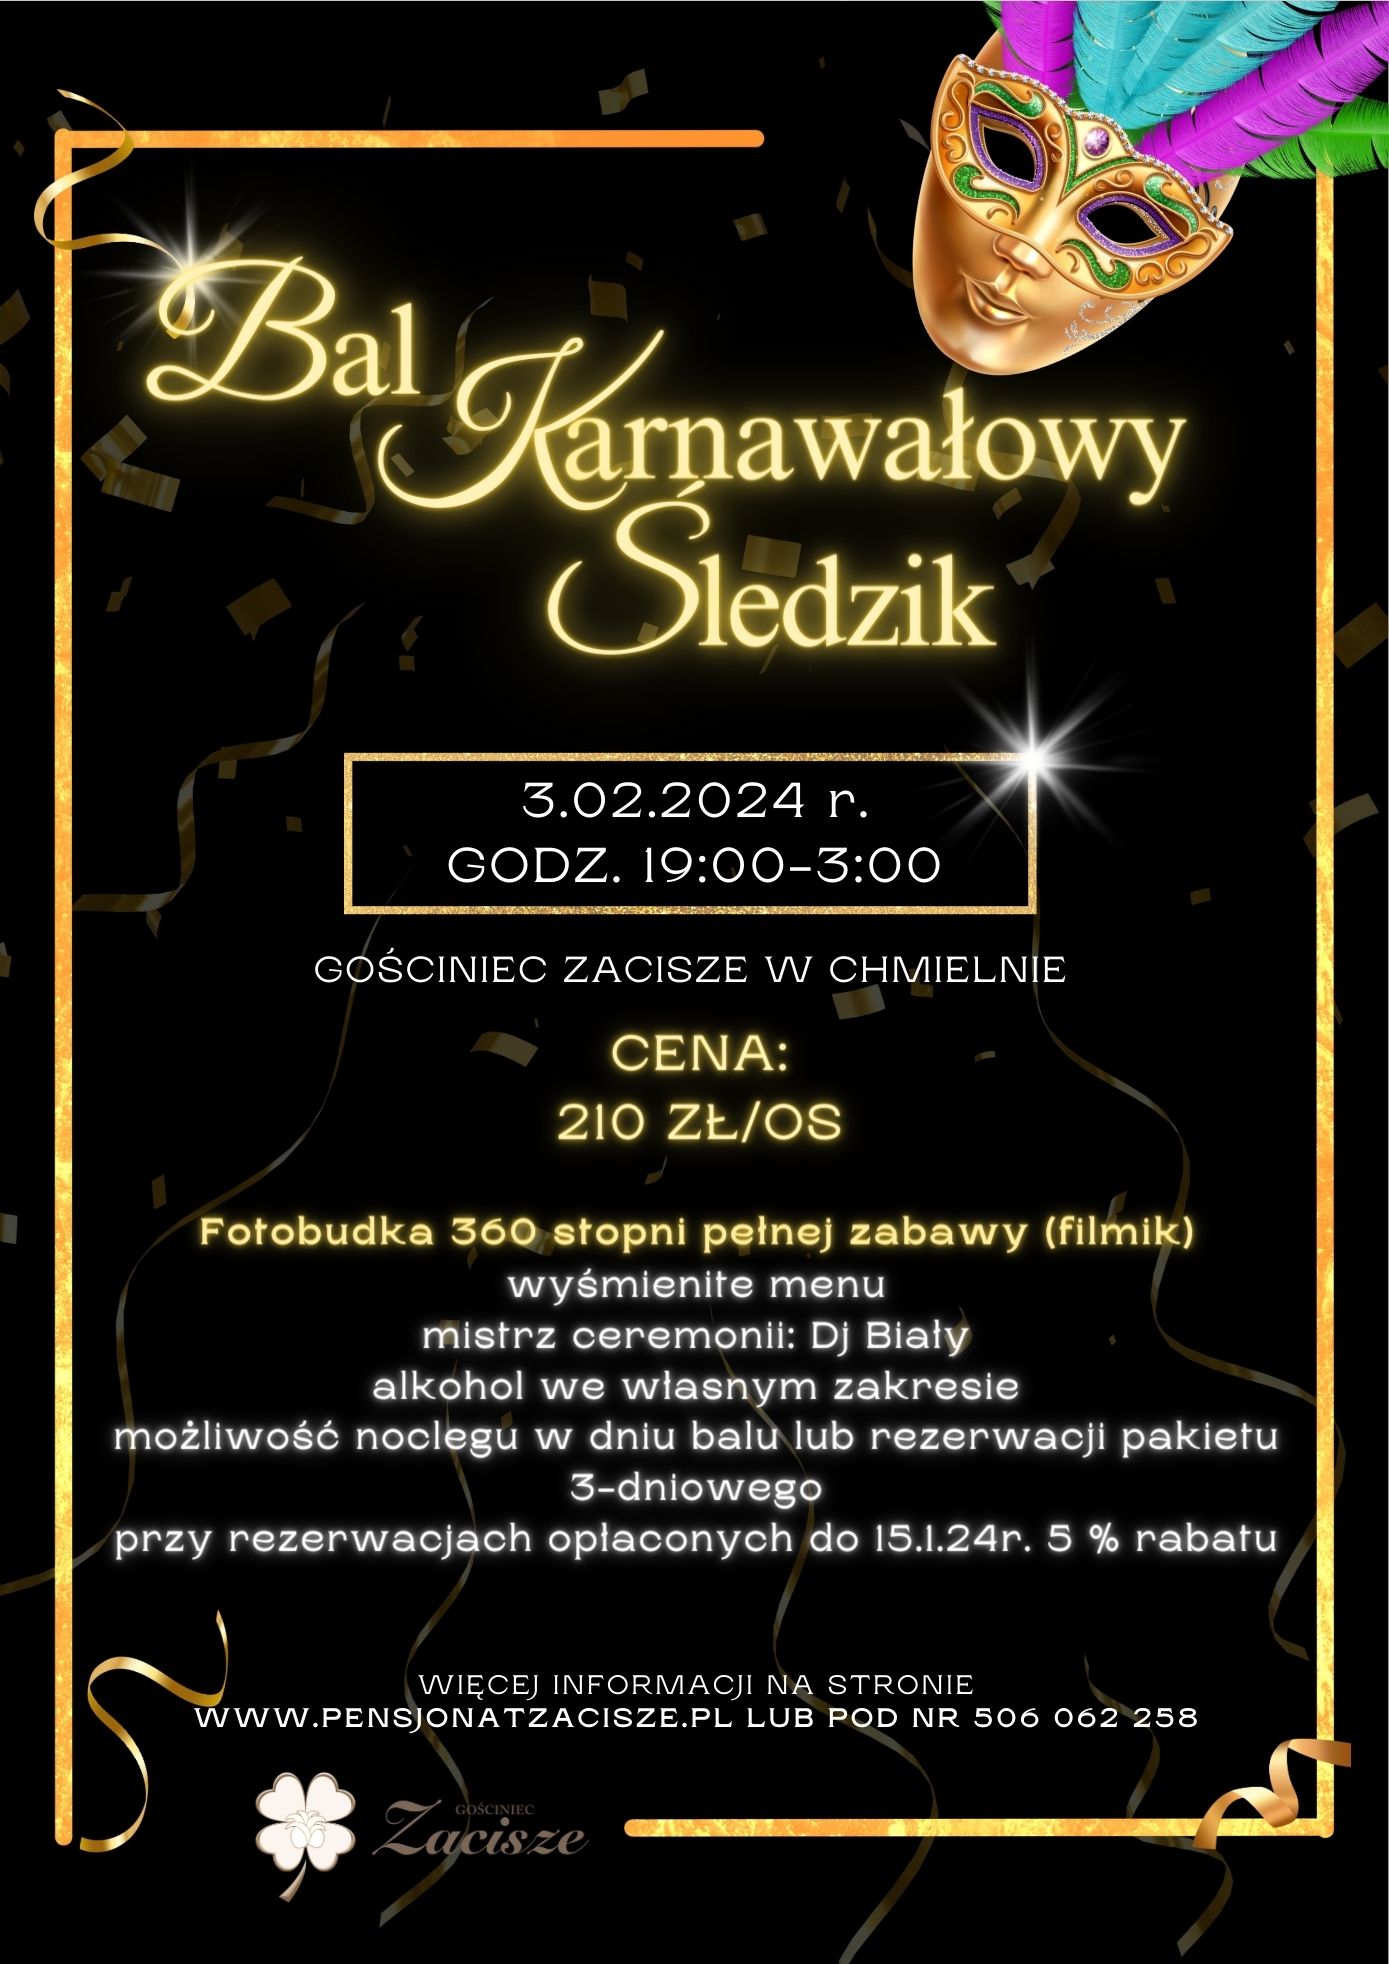 Bal Karnawałowy "Śledzik" - pensjonatzacisze.pl